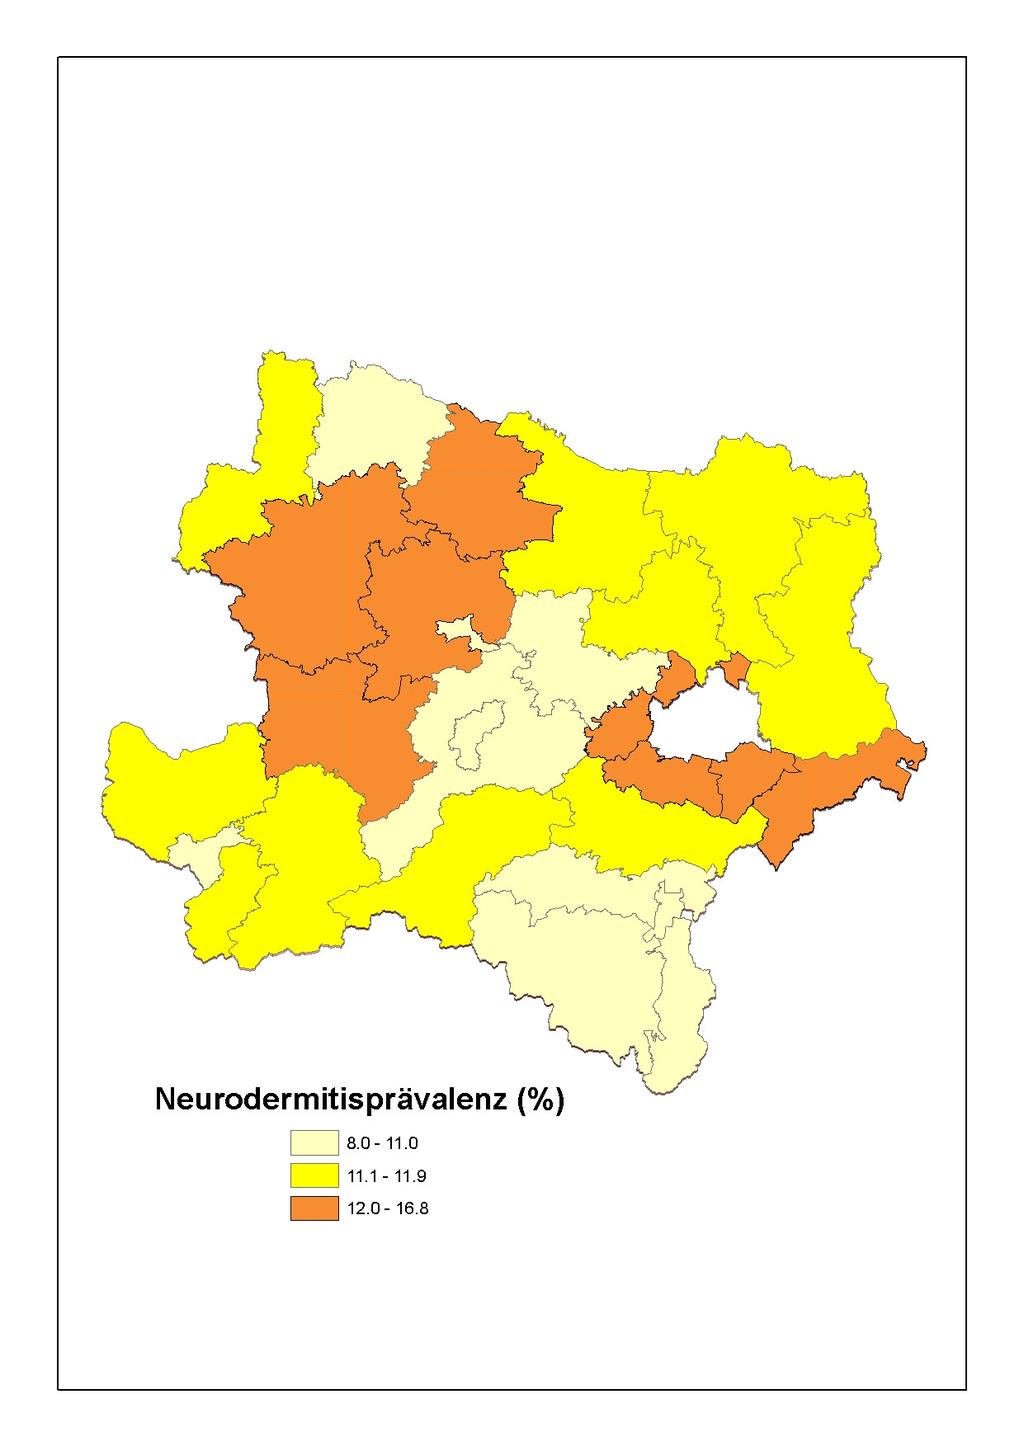 Abbildung 17: 6-7-Jährige Kinder in Niederösterreich, Landkarte der Lebenszeitprävalenz von Neurodermitis